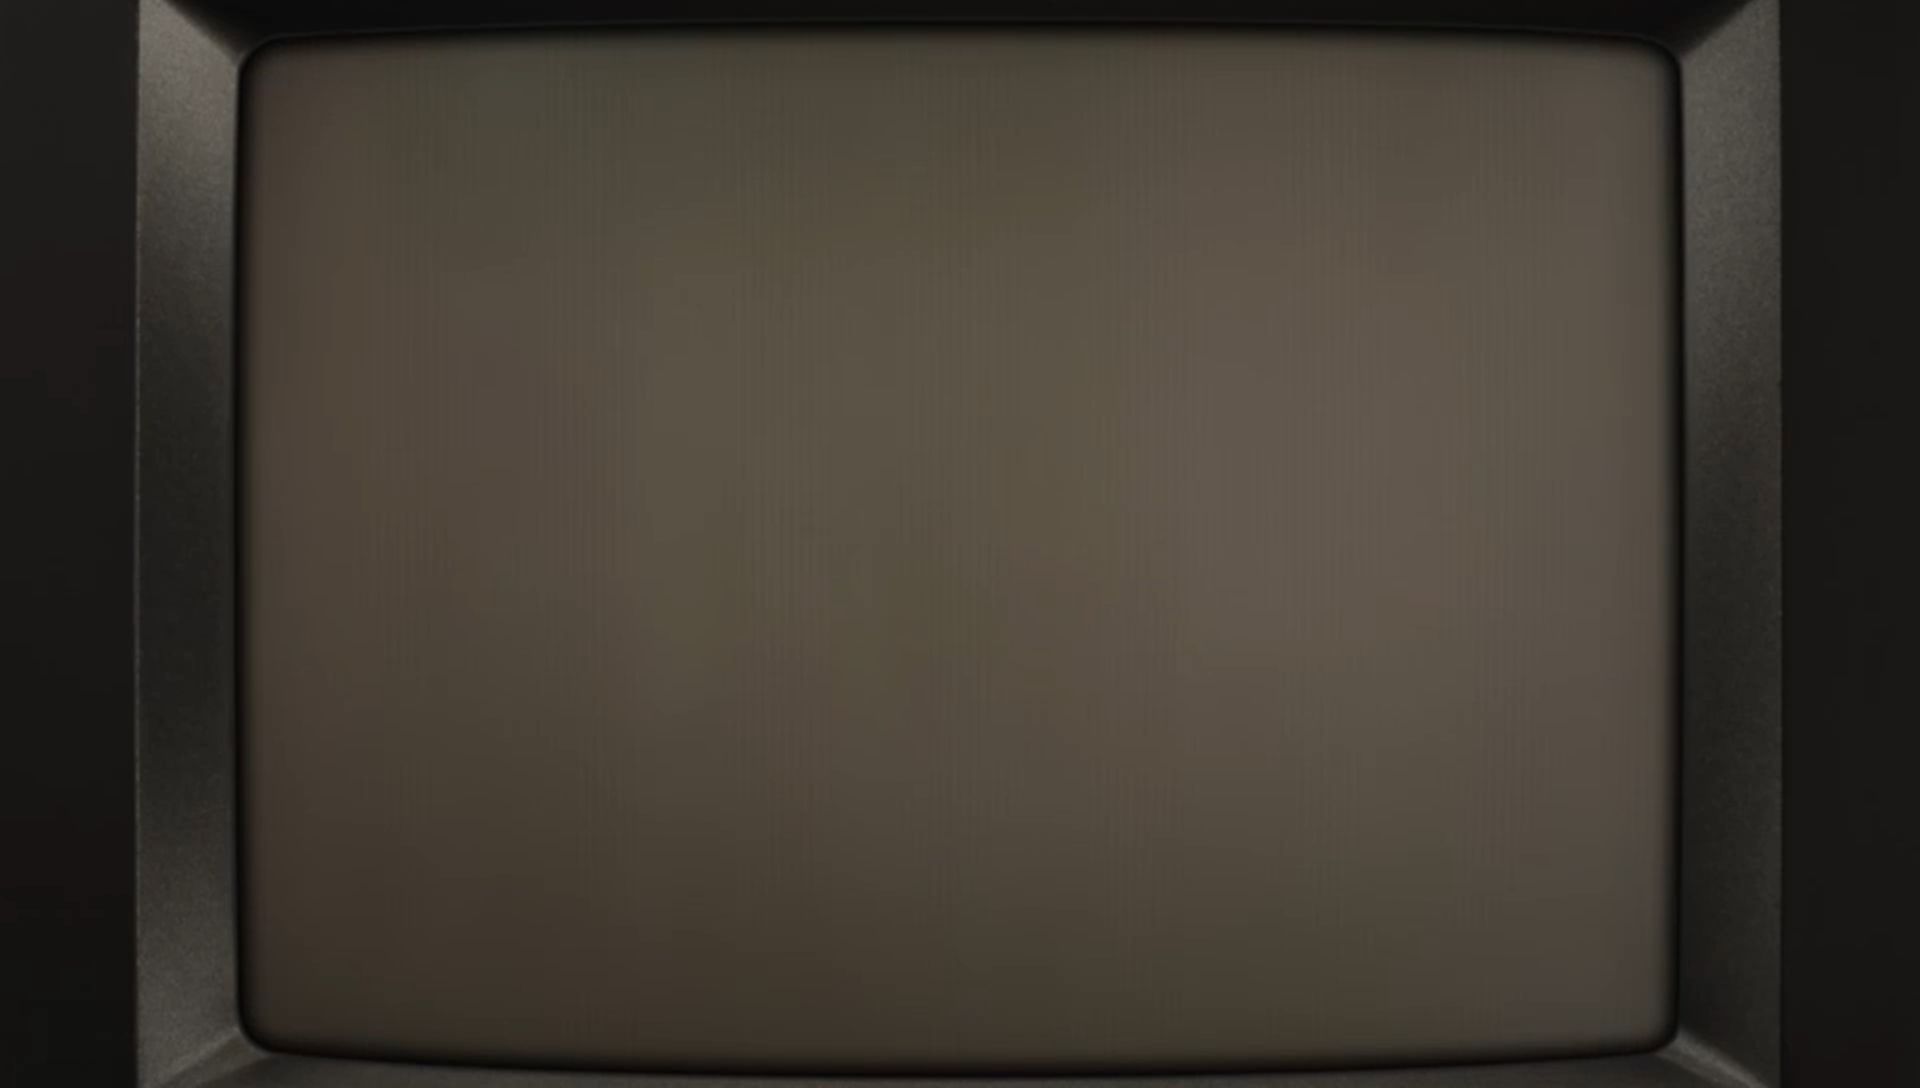 五菱重现上个世纪的黑白电视广告